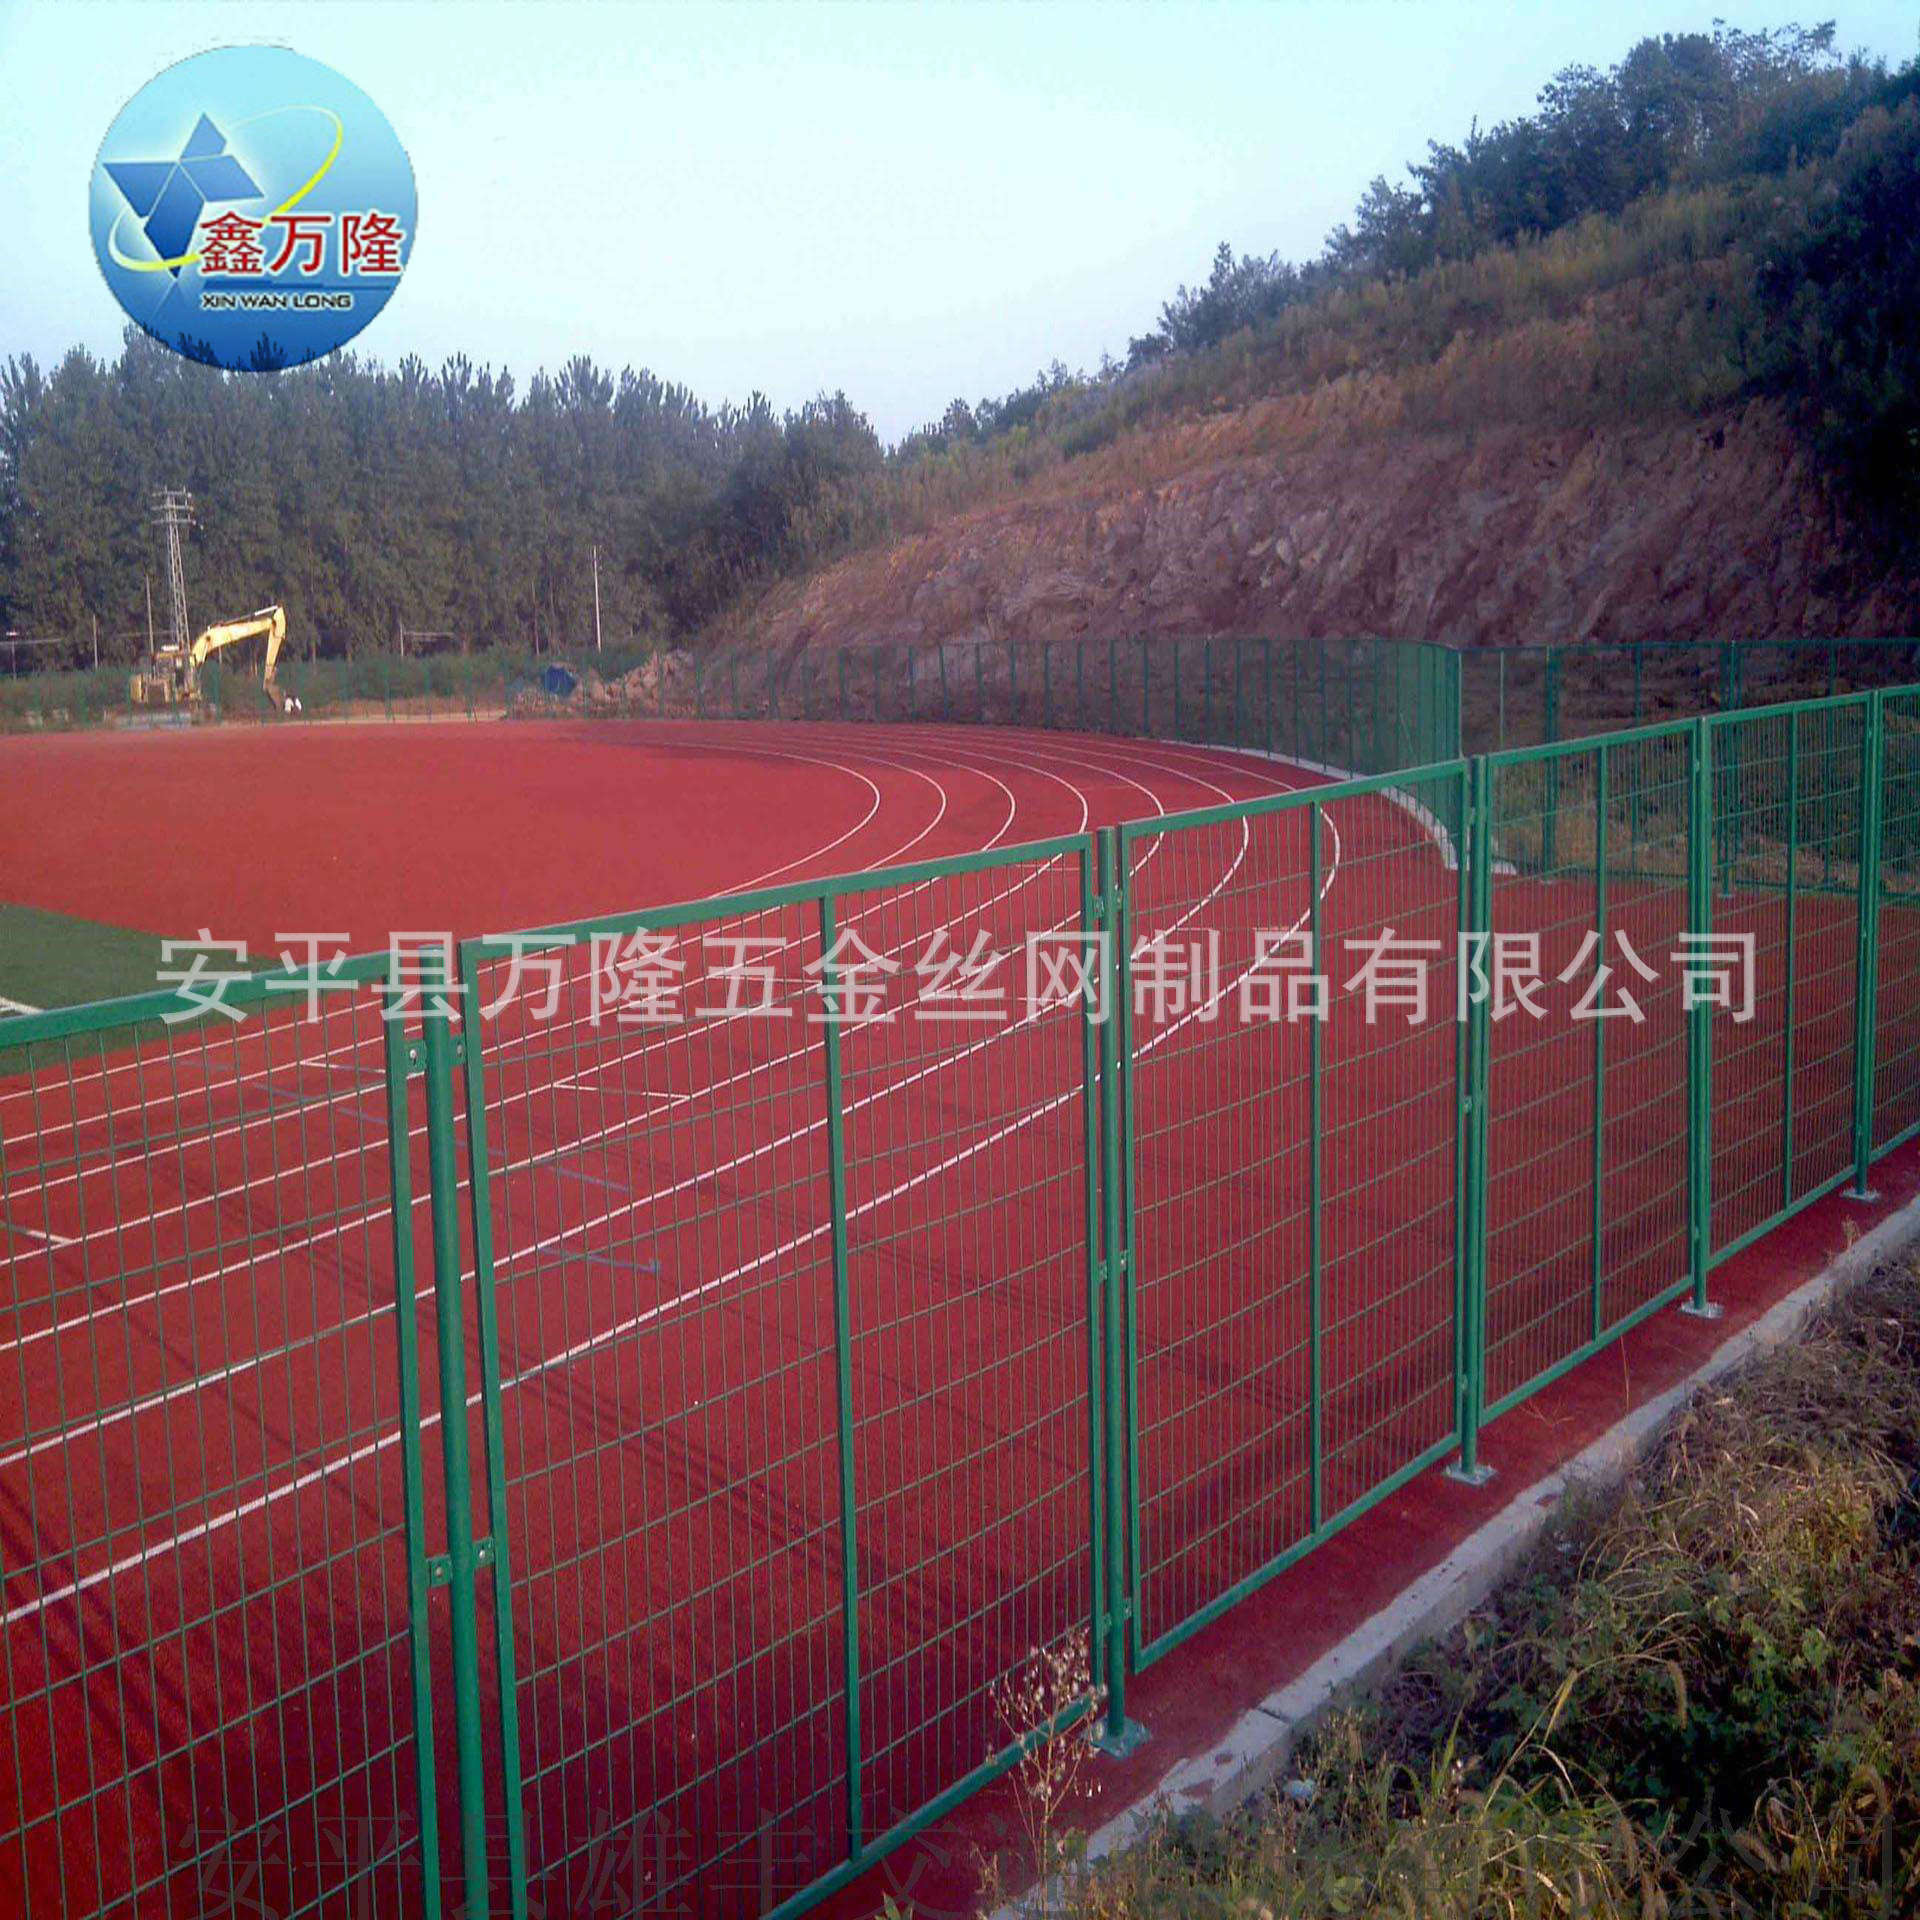 新款热销 绿色体育场球场围网|学校操场防护栏球场围网示例图6